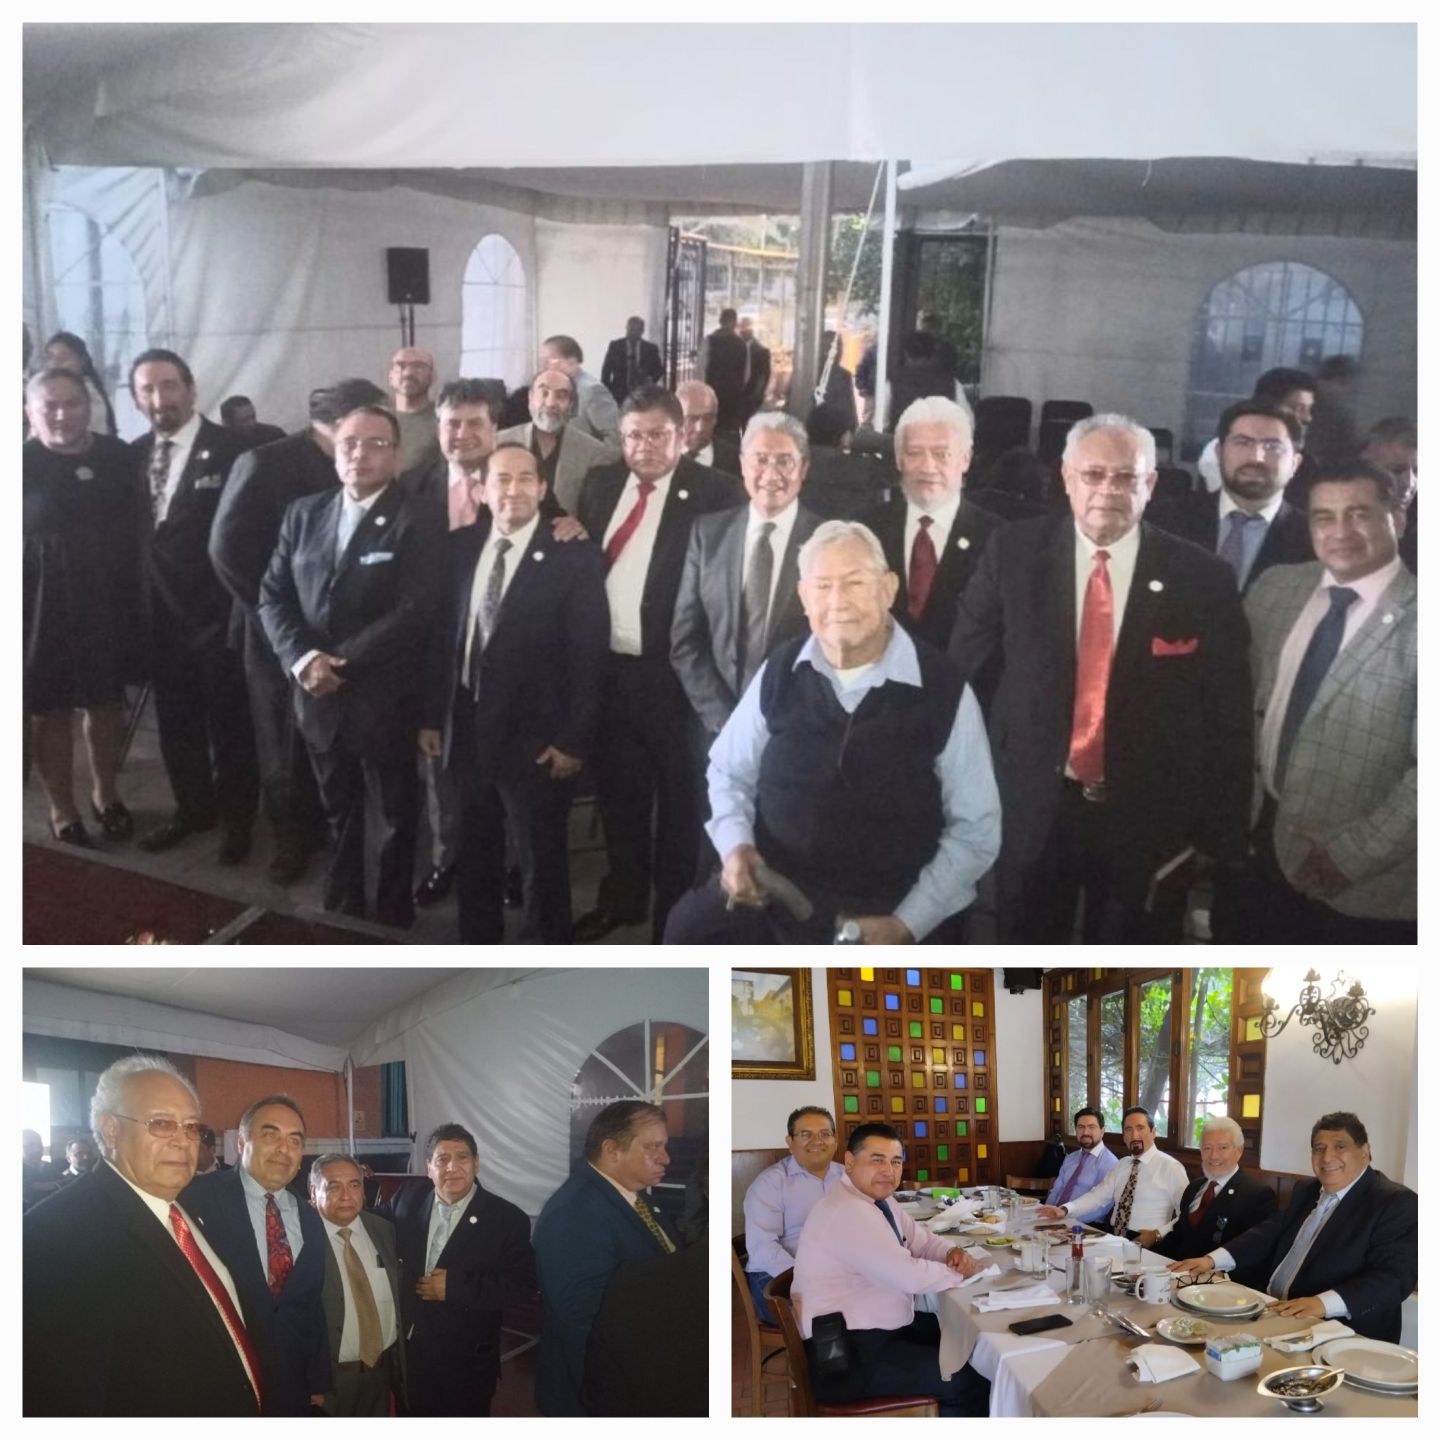 Grandes juristas asistieron a la exposicion del General Brigadier en el Palacio de Justicia de Texcoco